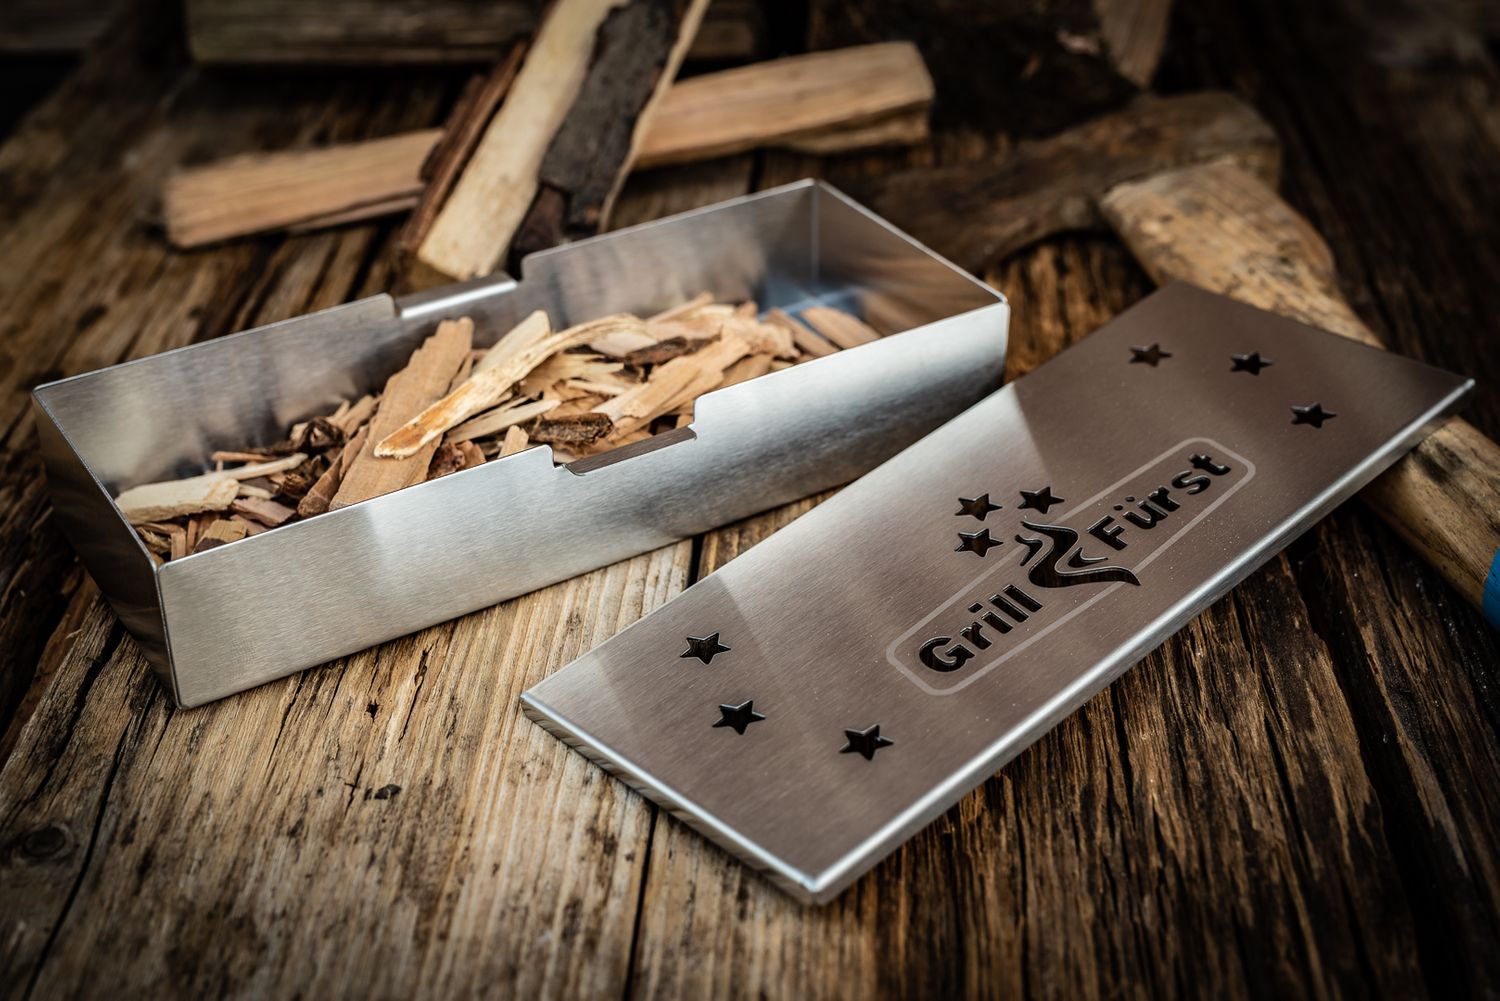 Edelstahl Fleisch Smoky Flavor Smoker Box HERCHR Smoker Box für BBQ Grill Holzspäne 